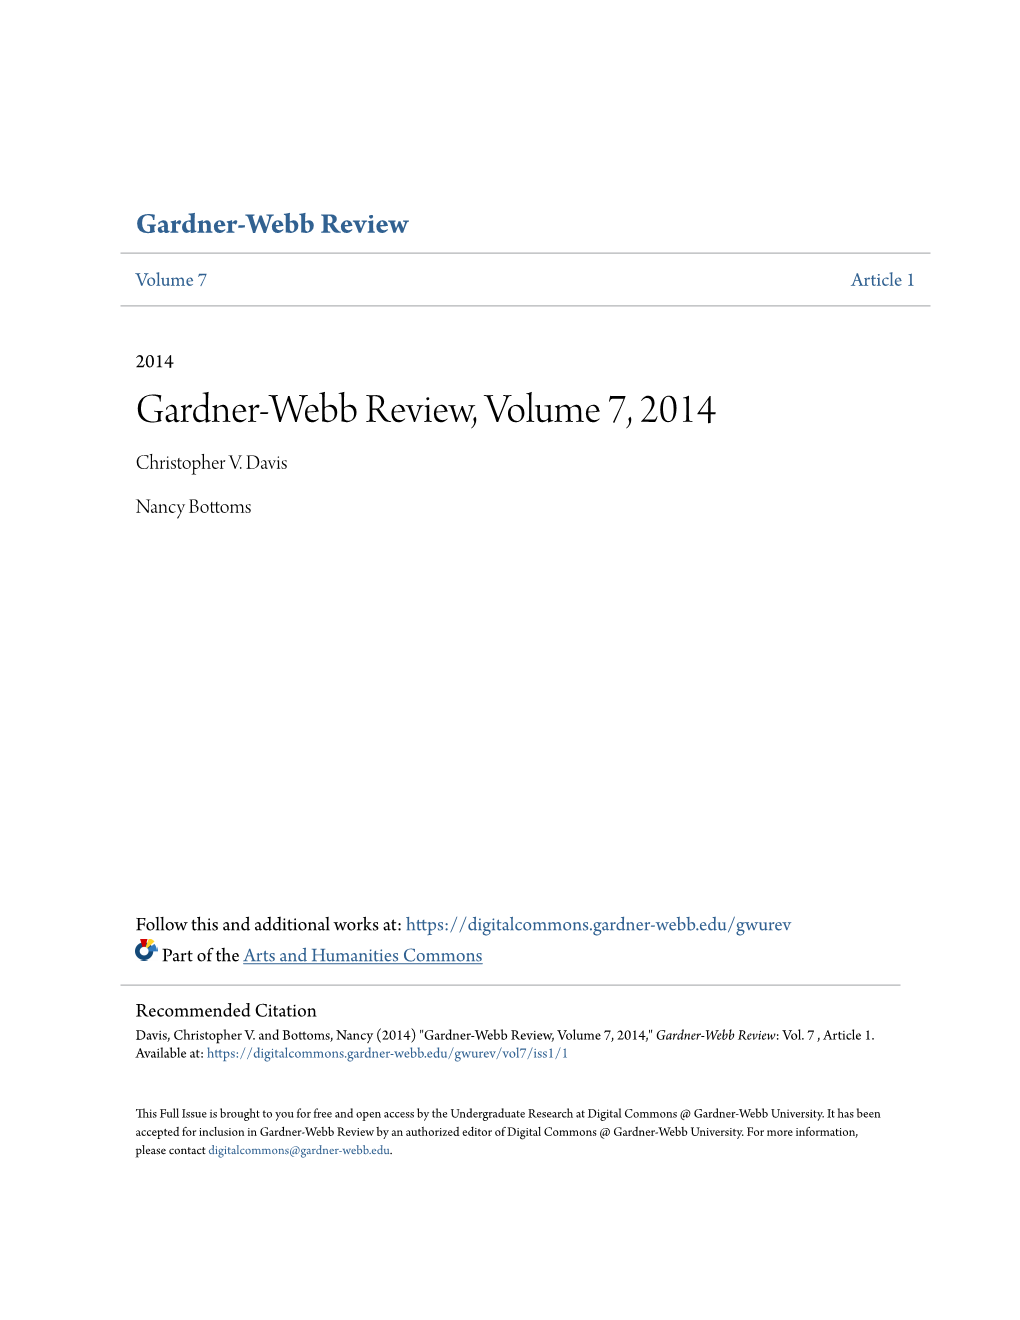 Gardner-Webb Review, Volume 7, 2014 Christopher V